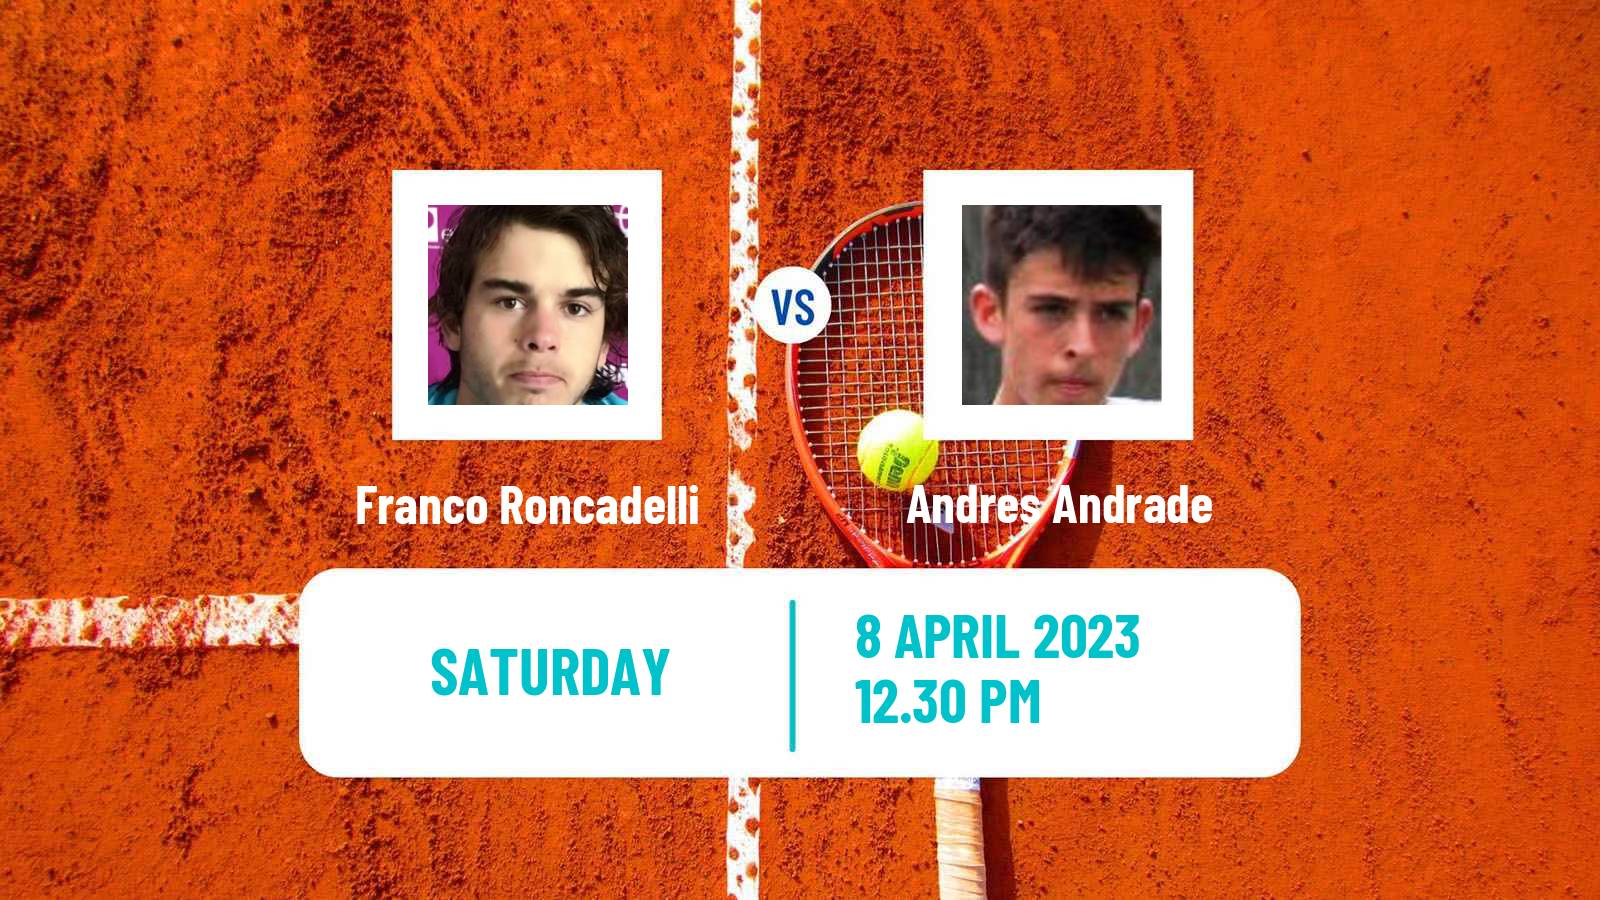 Tennis ITF Tournaments Franco Roncadelli - Andres Andrade